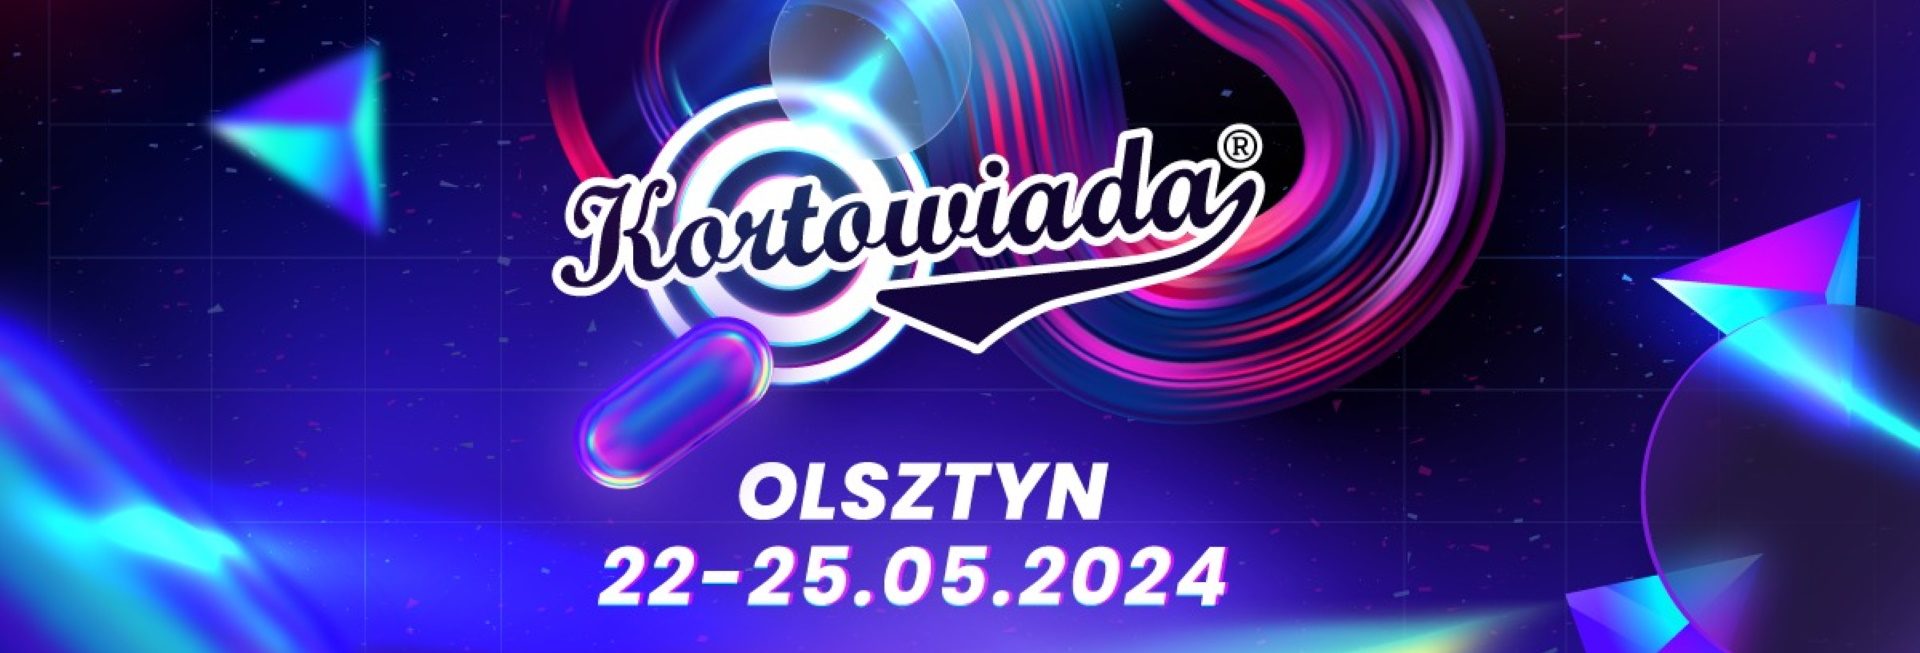 Plakat zapraszający w dniach 22-25 maja 2024 r. do Kortowa na 63. edycję święta studenckiego Kortowiada 2024.